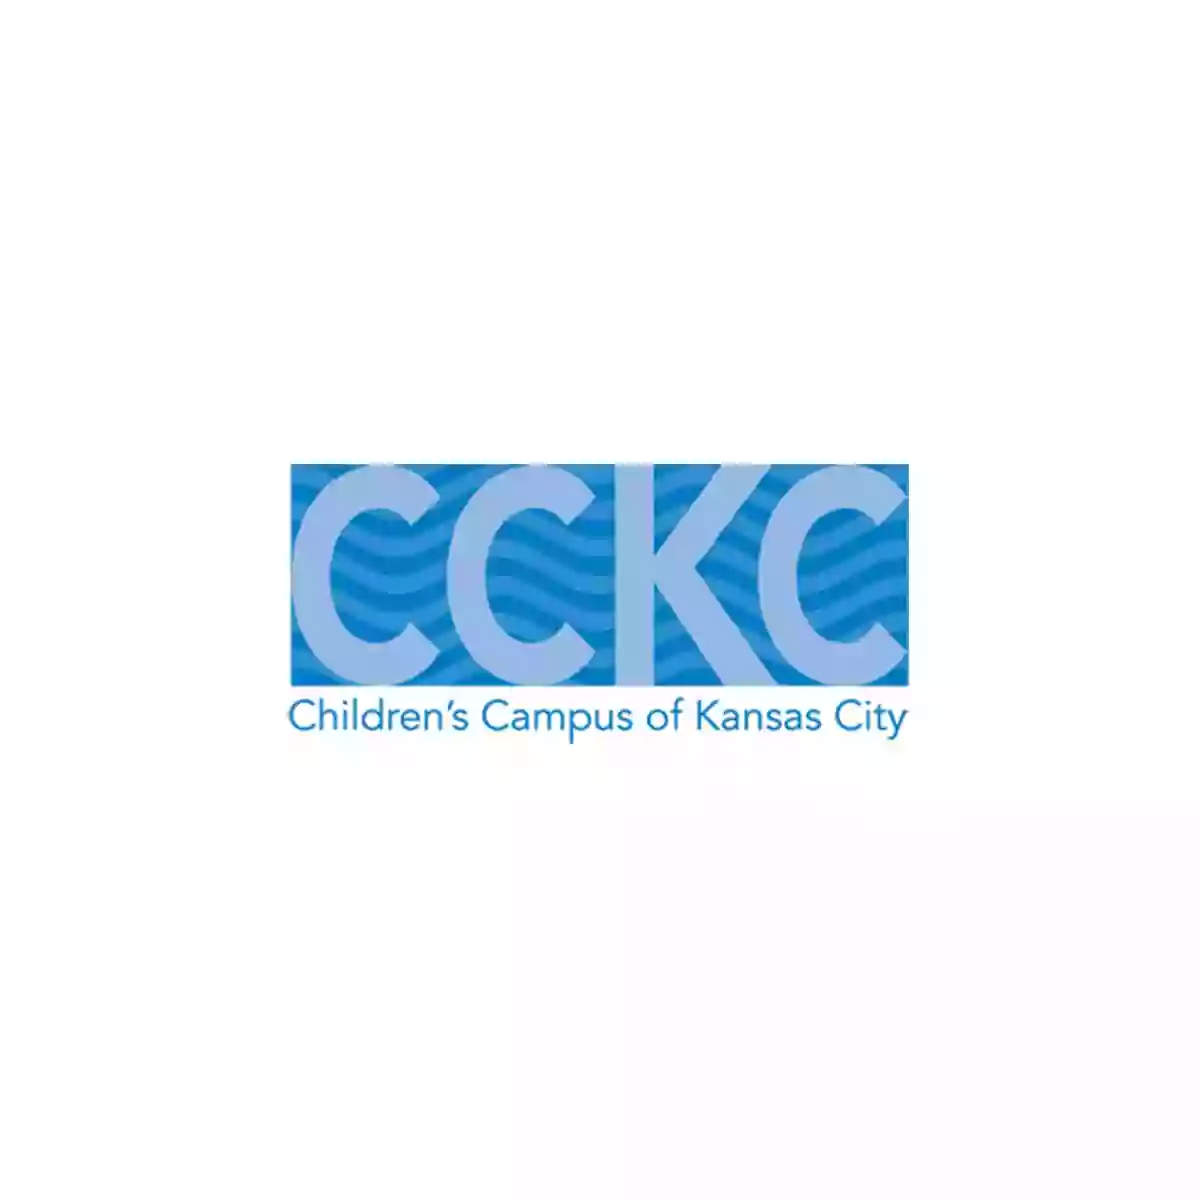 Children's Campus of Kansas City